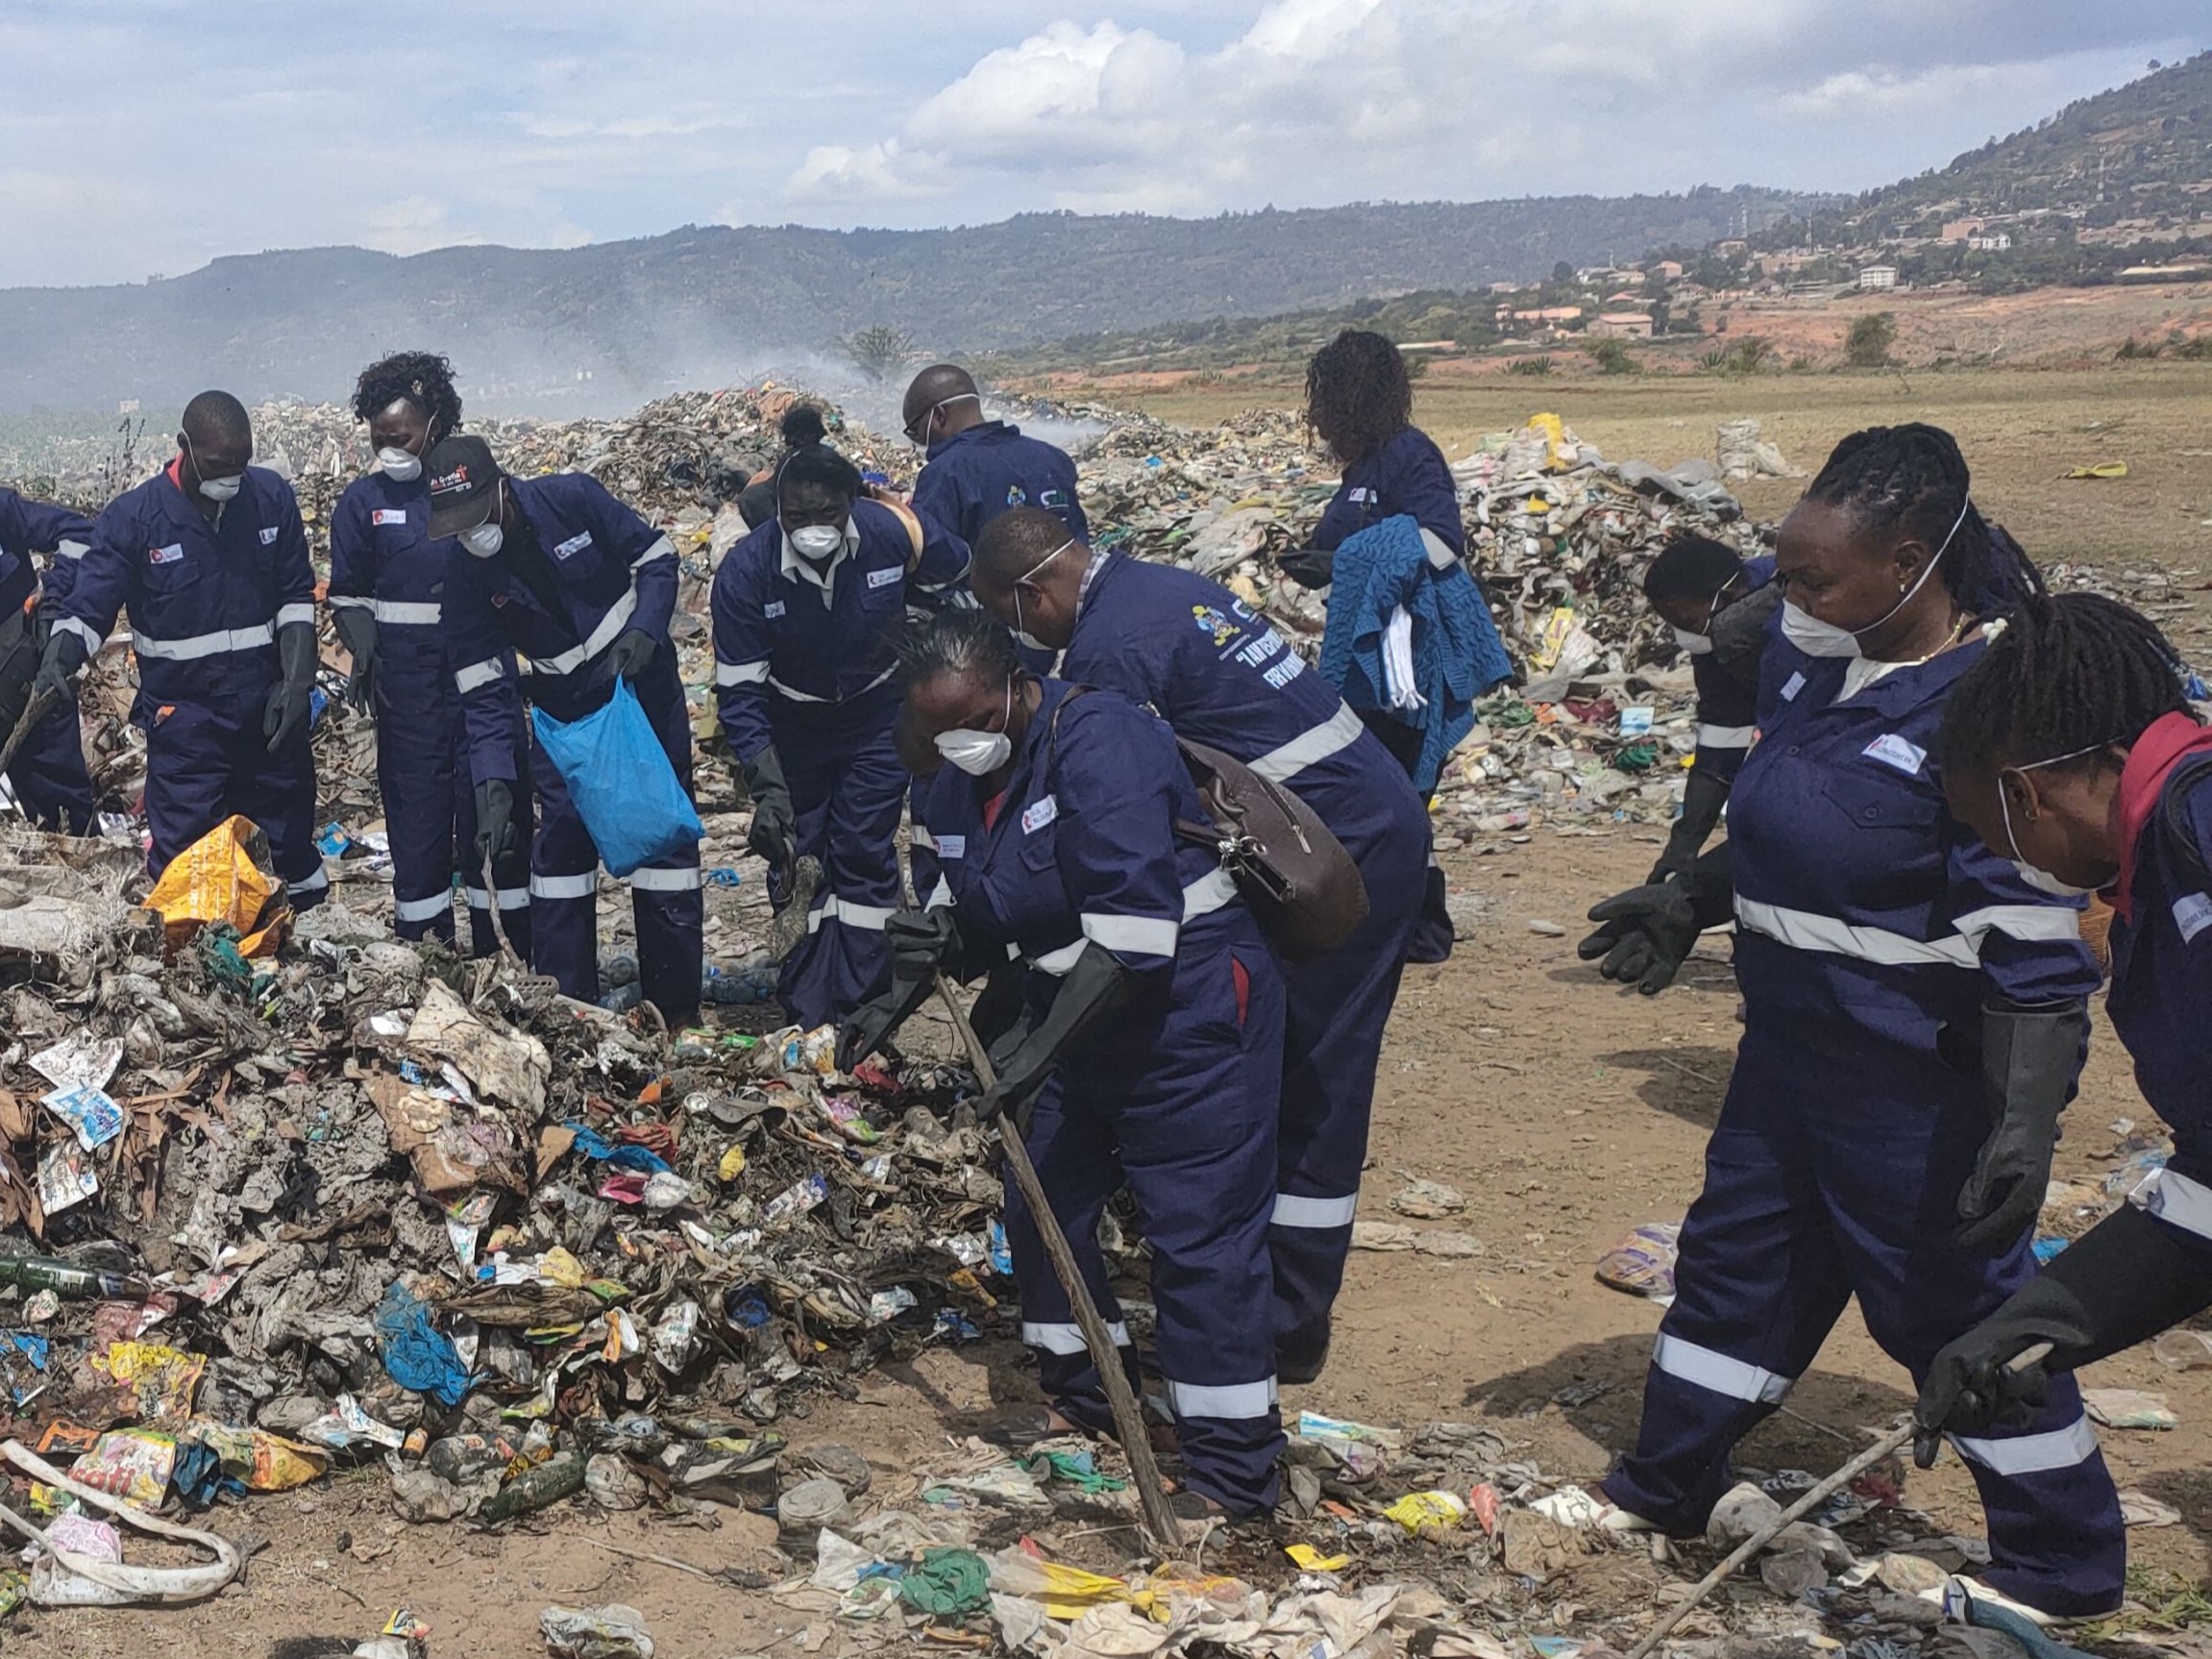 Arbeiter*innen in Schutzausrüstung auf einer Mülldeponie in Kenia.